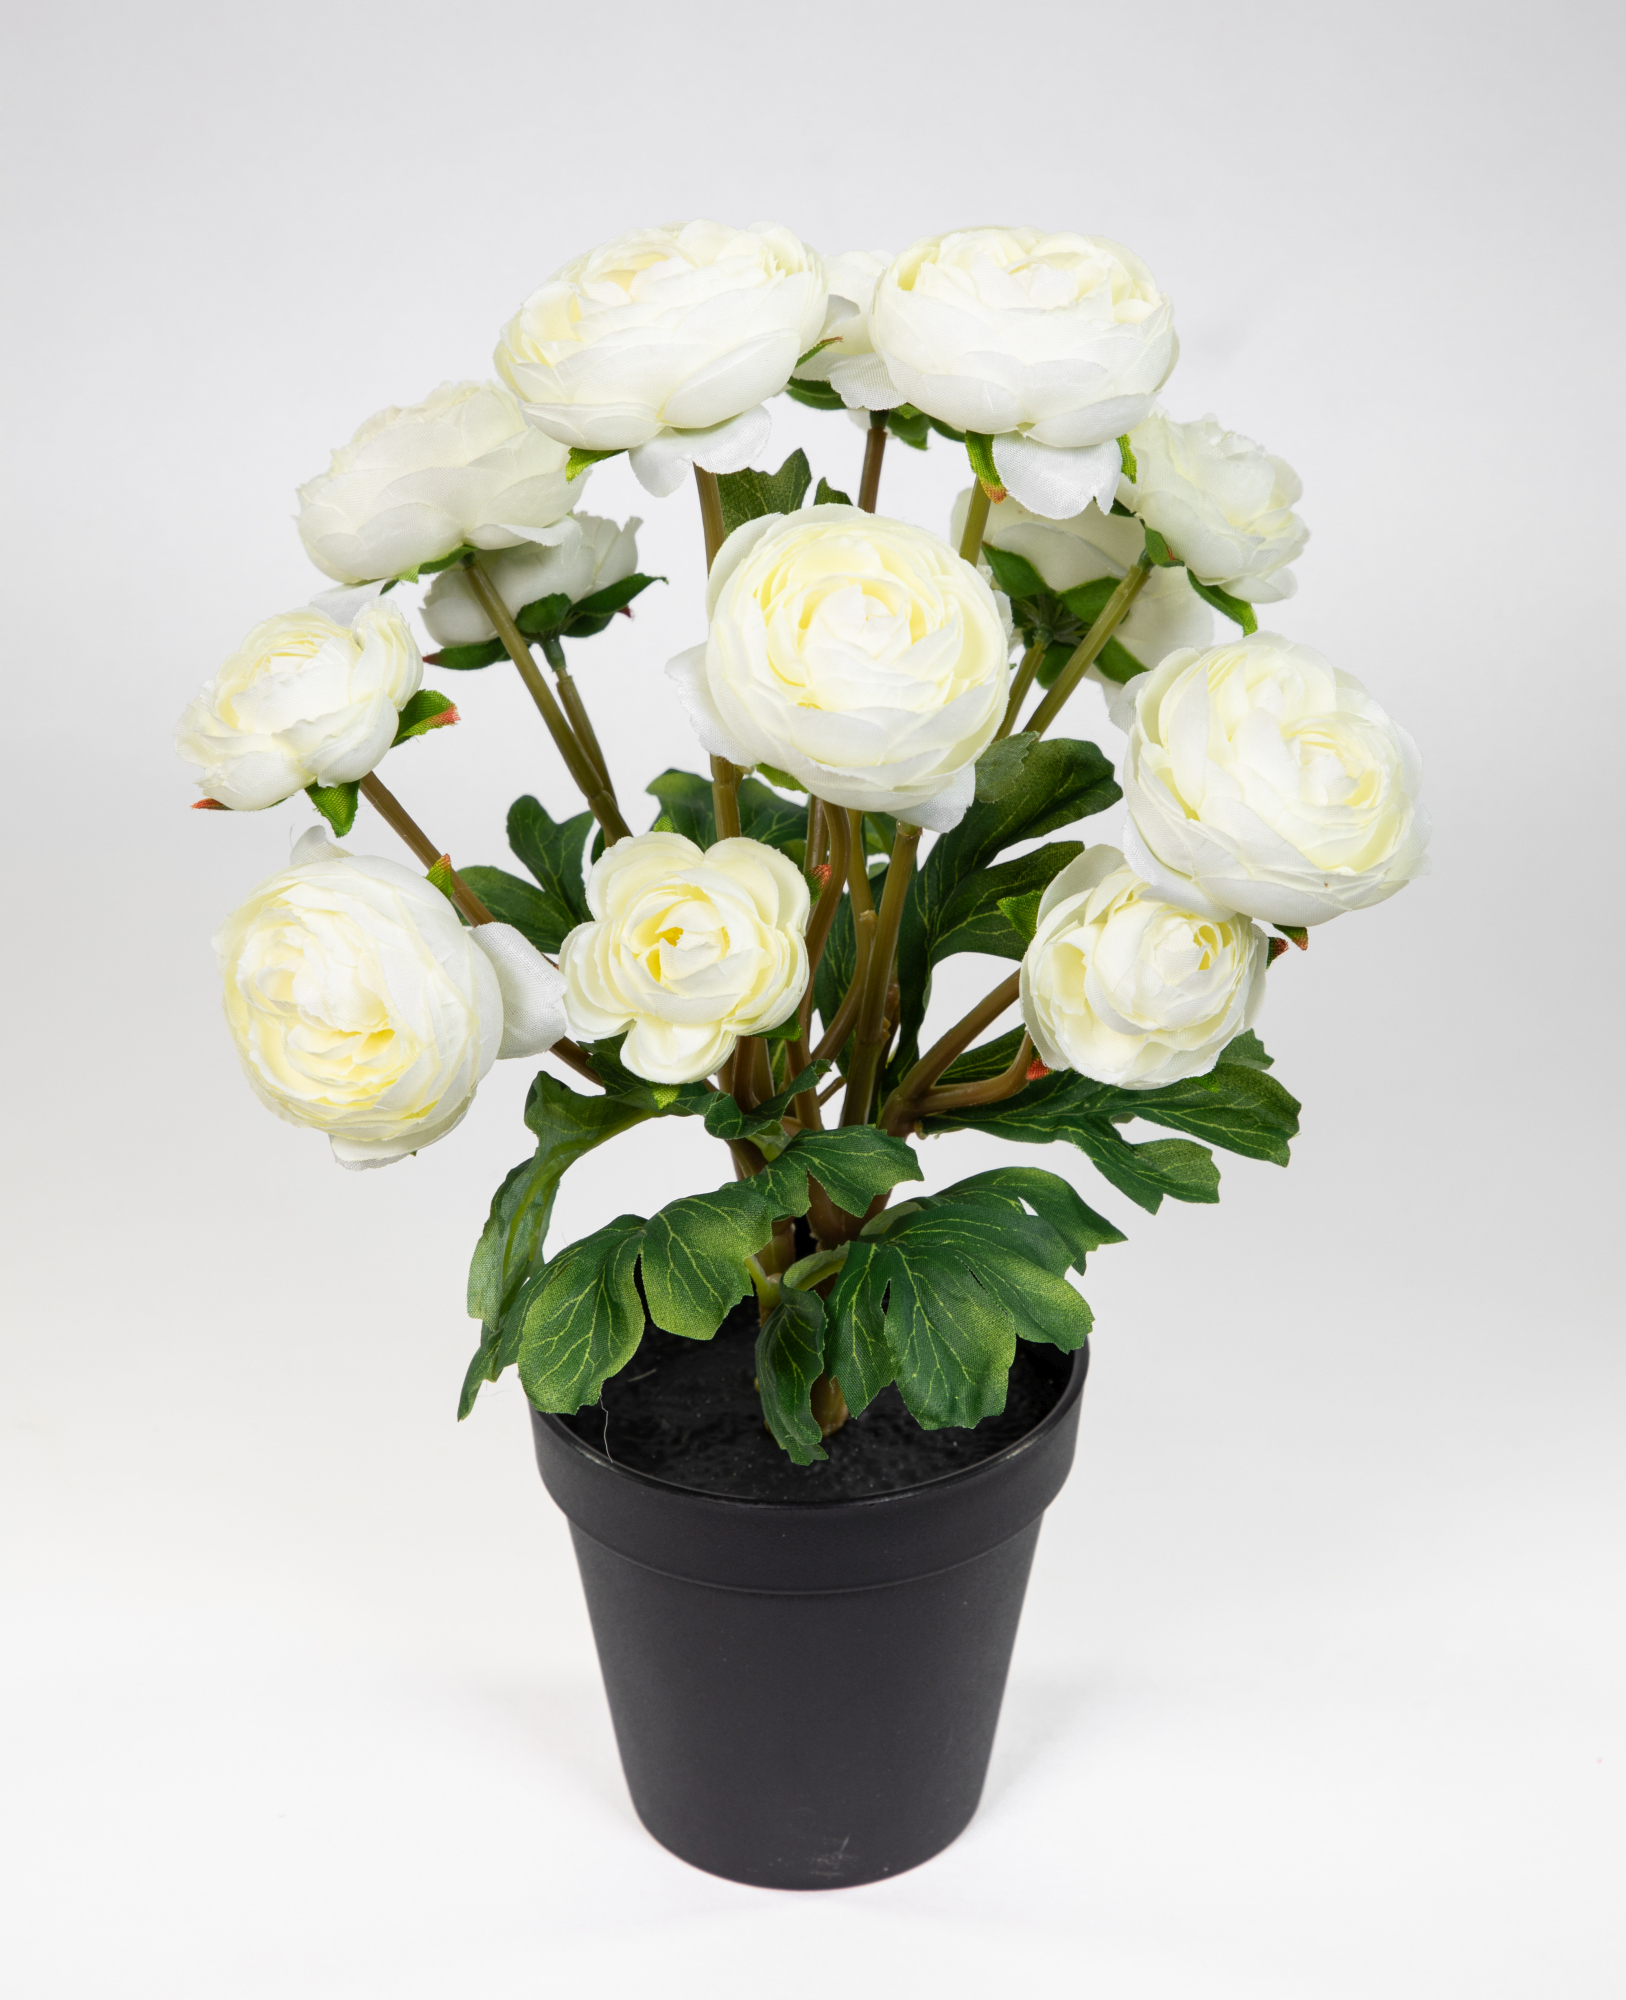 Ranunkelbusch Natural 32cm weiß im Topf DP Kunstpflanzen Kunstblumen künstliche Ranunkel Blumen